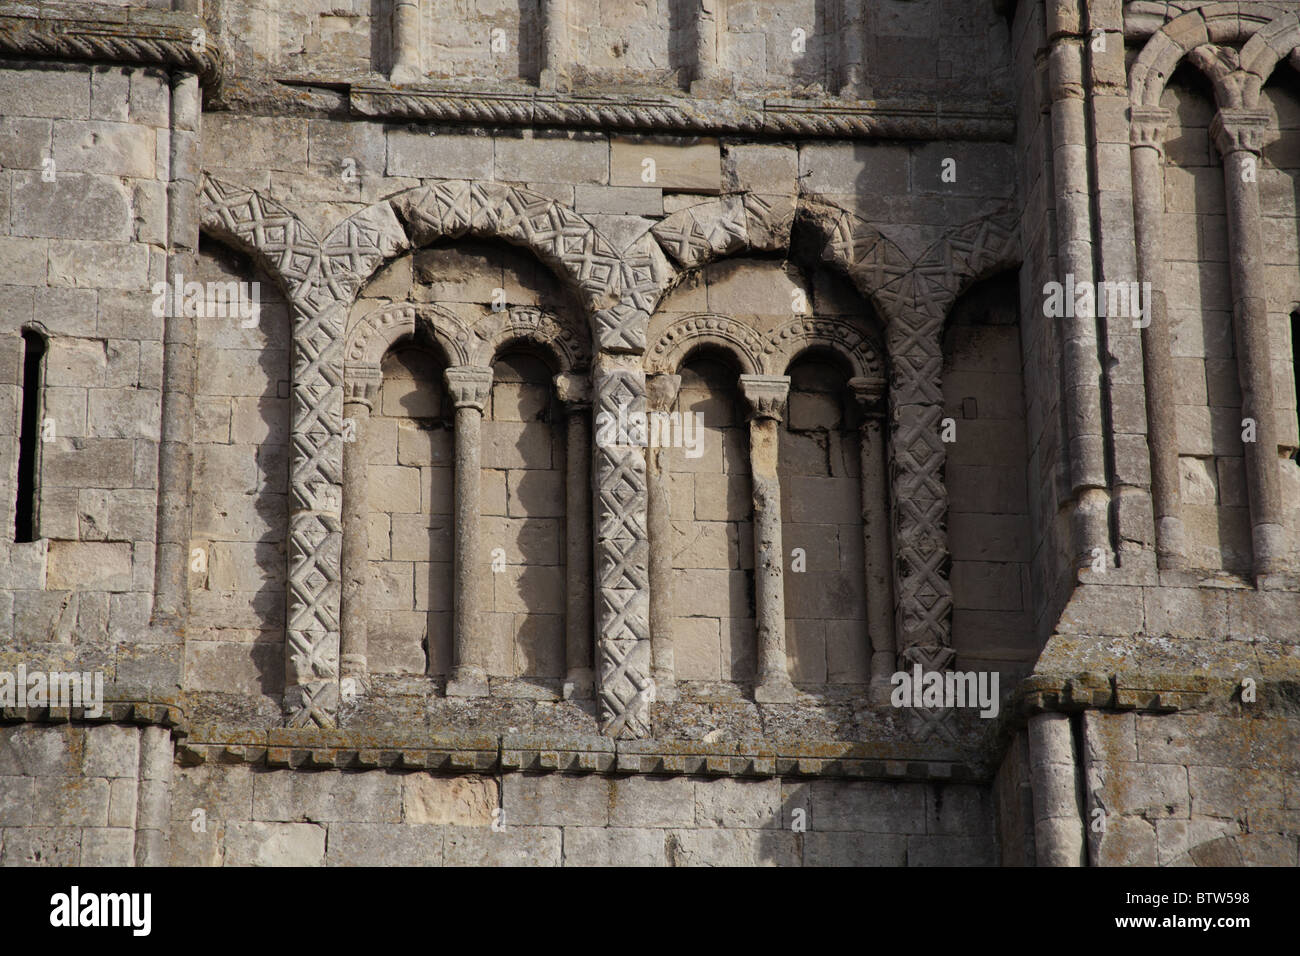 Siglo xii Norman arcos ciegos con talla de pañal detalles sobre la torre de la Abadía de Malmesbury, Wiltshire Foto de stock